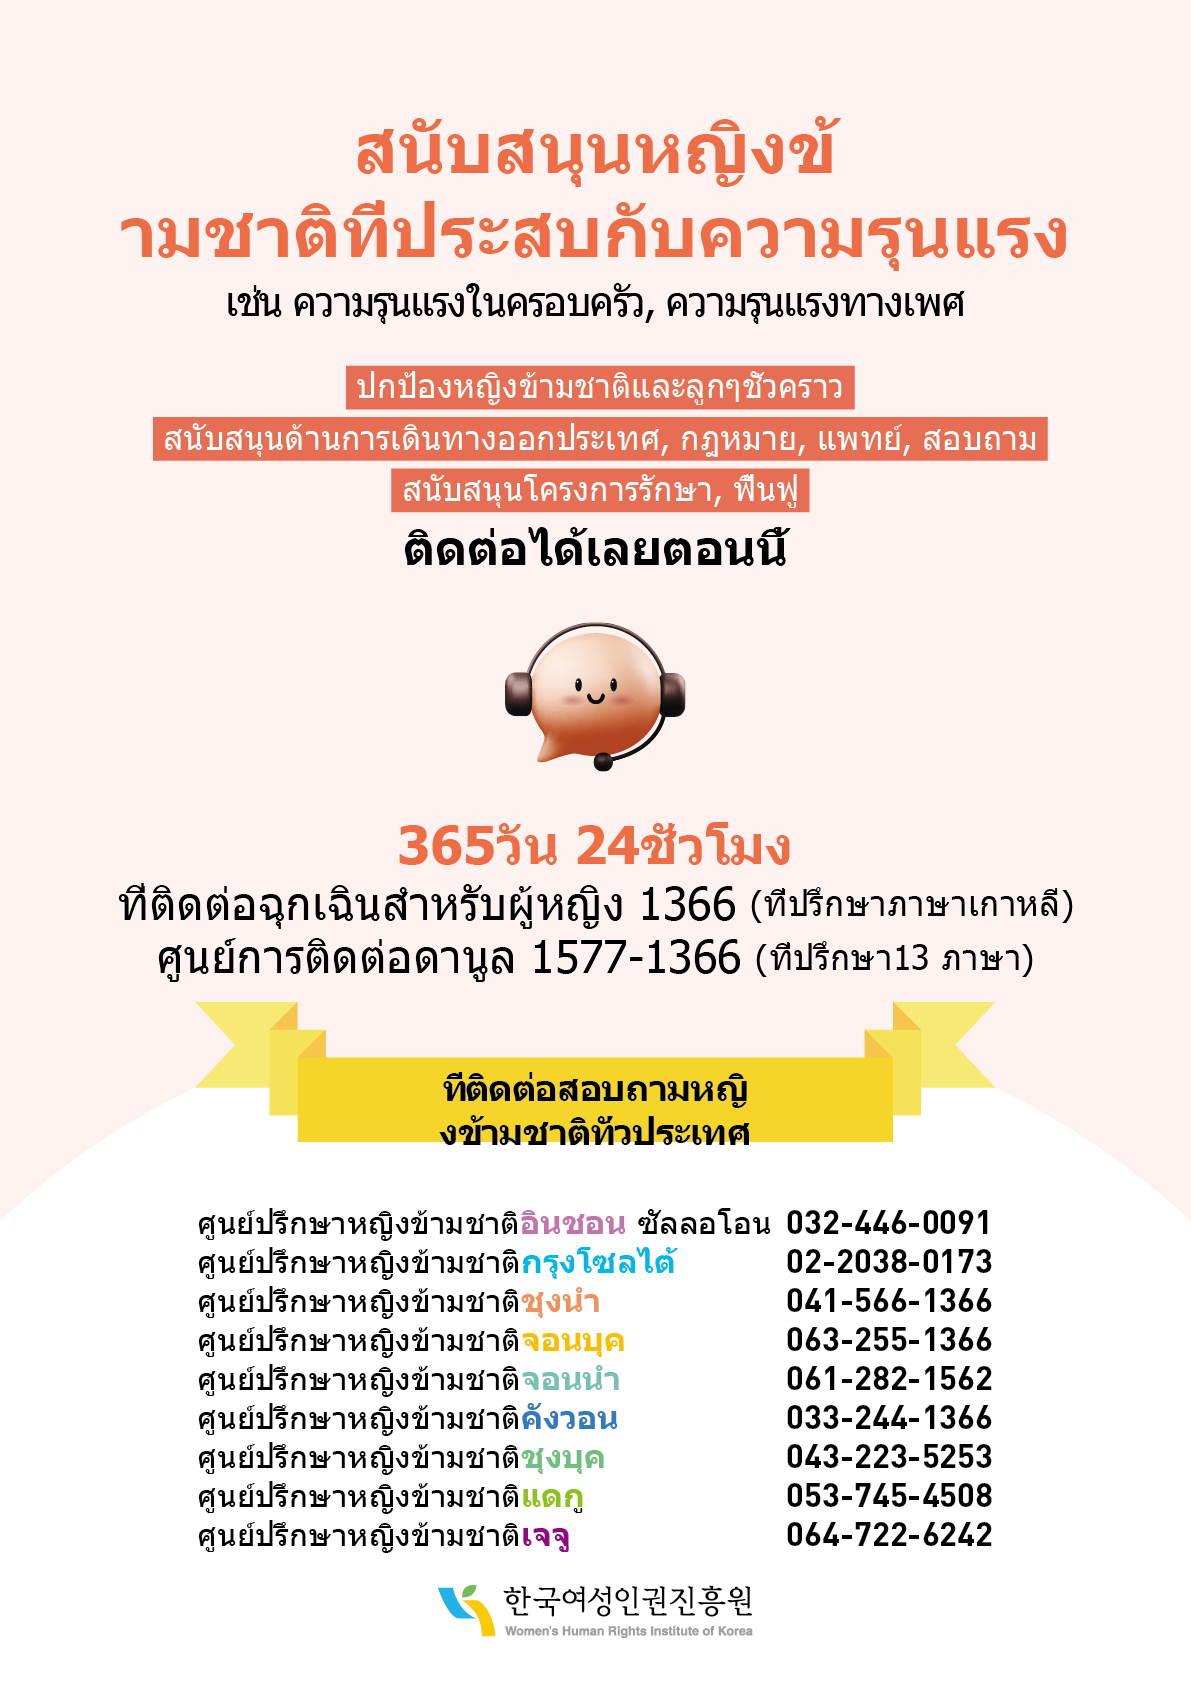 이주여성 폭력피해 보호·지원 안내 웹포스터(태국어)_300.png